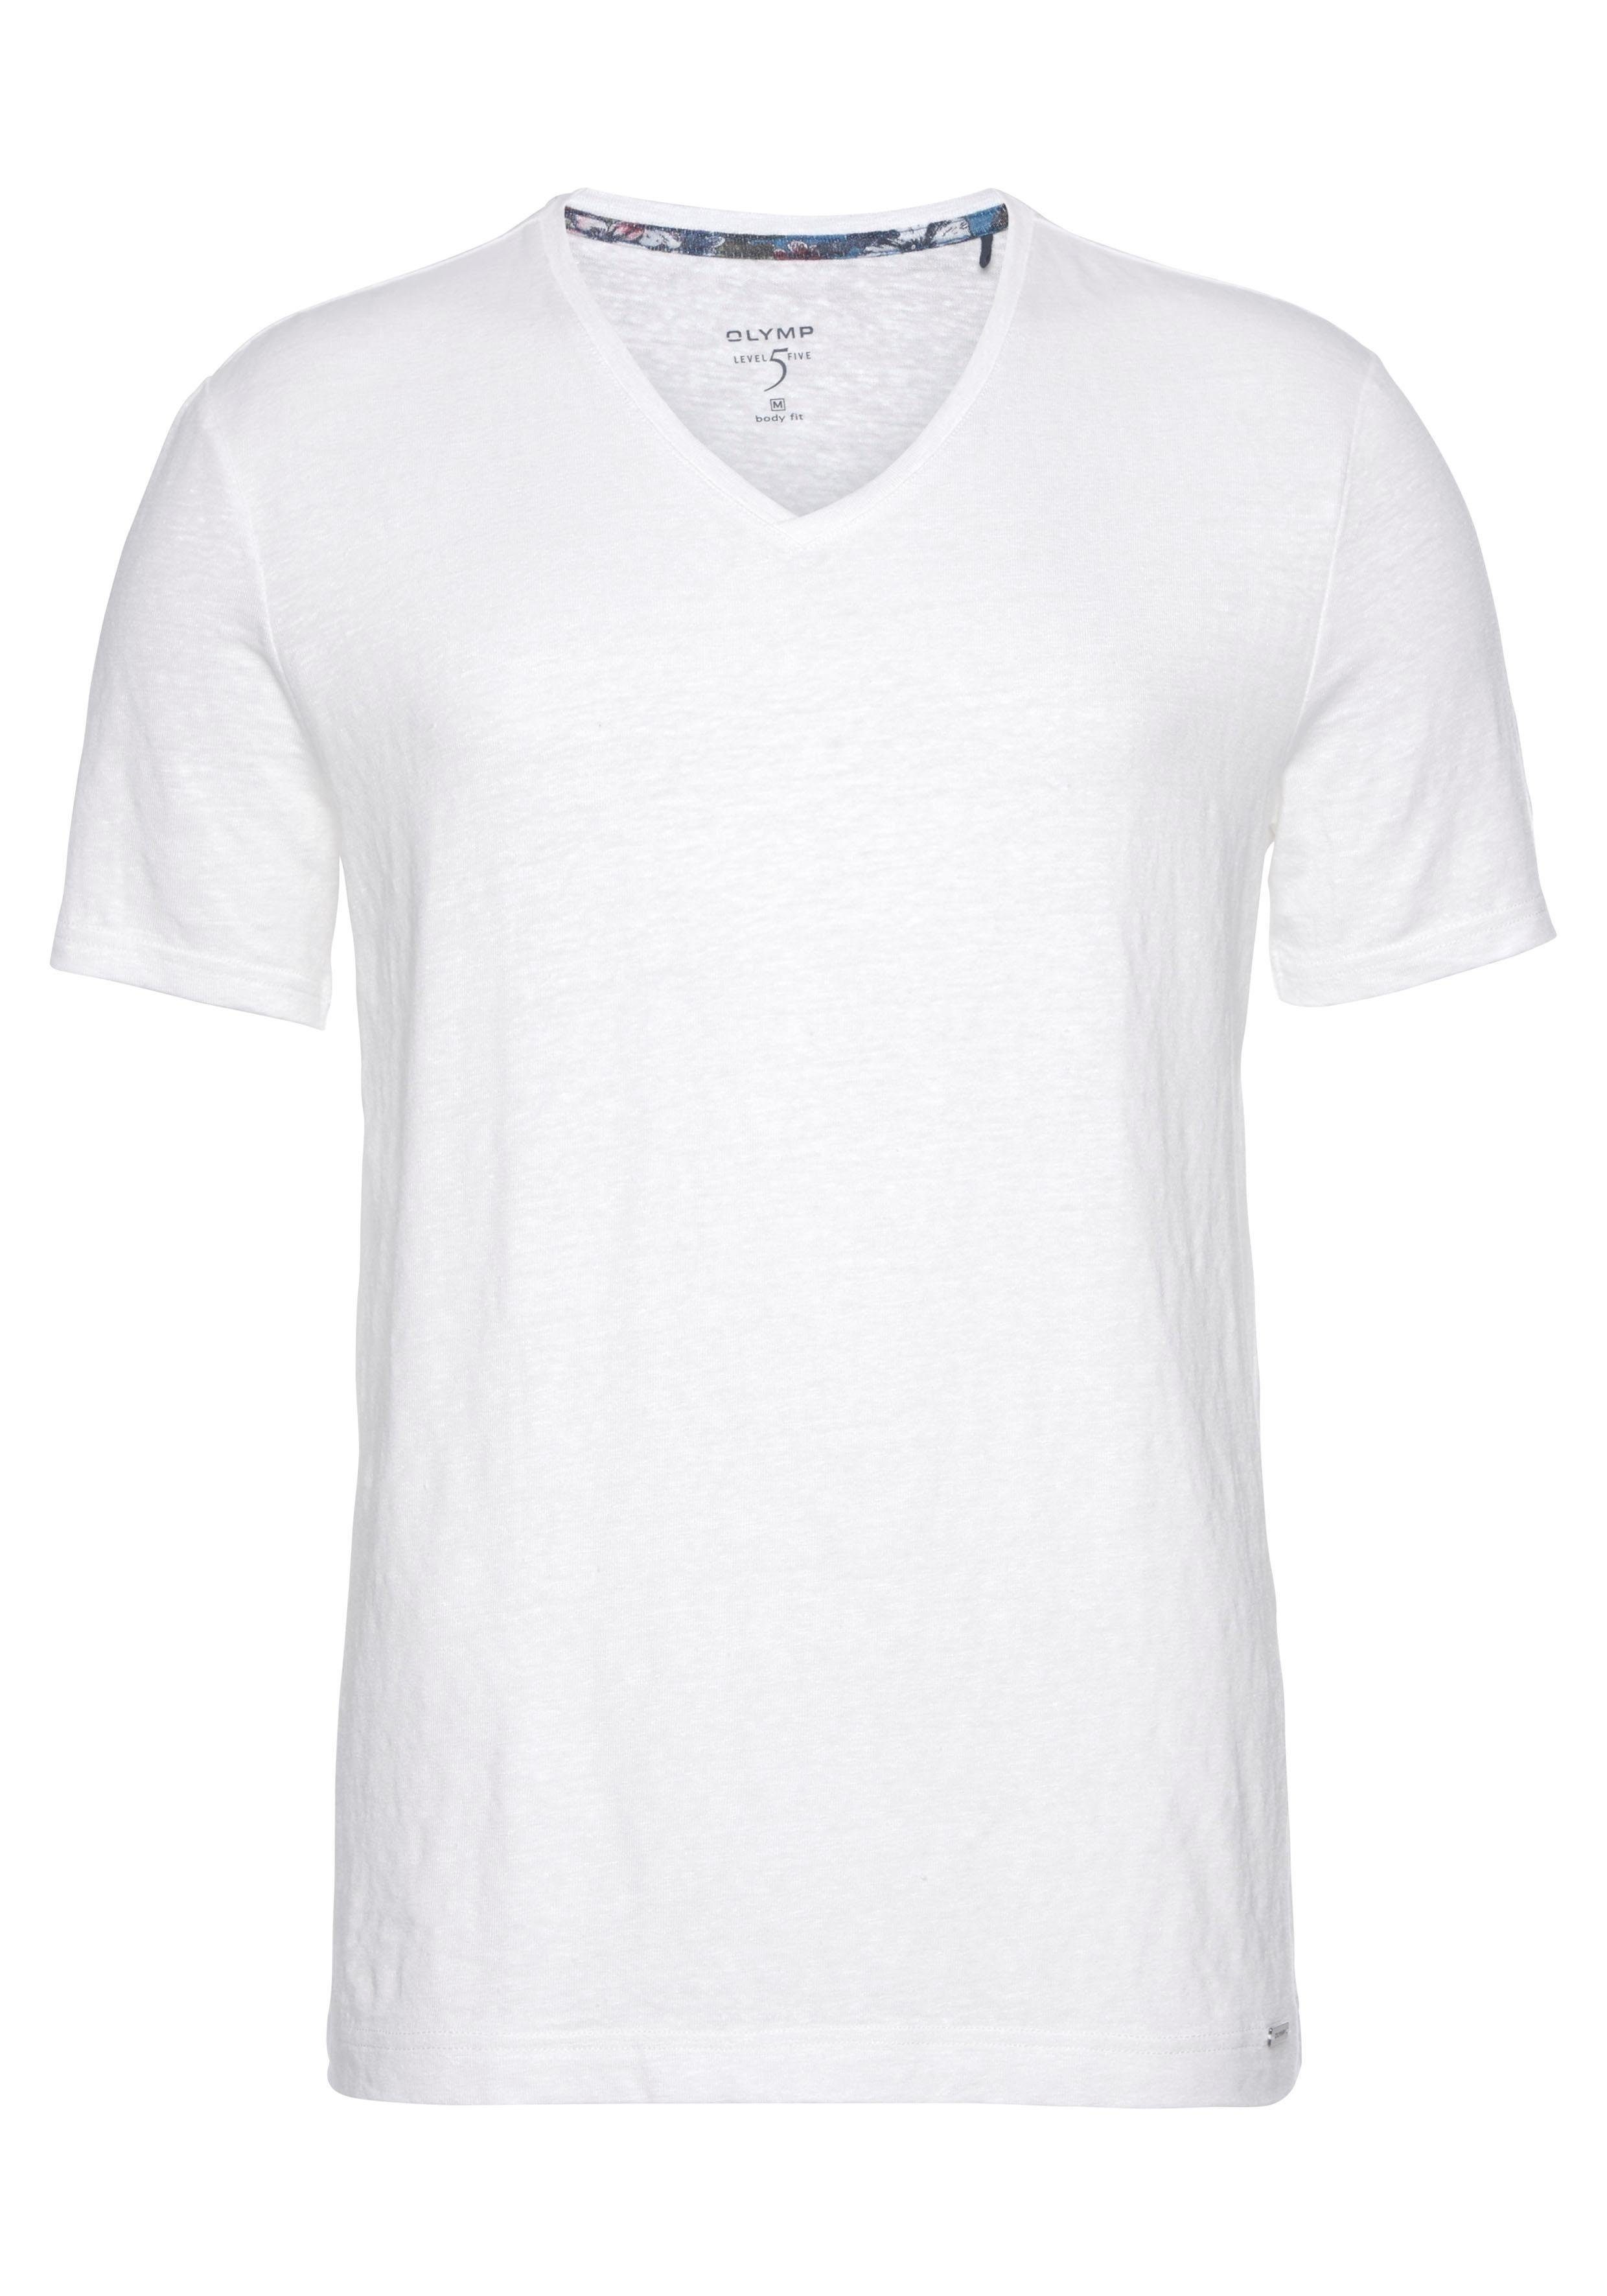 OLYMP T-Shirt Level Five body fit mit hohem Leinenanteil offwhite-weiß